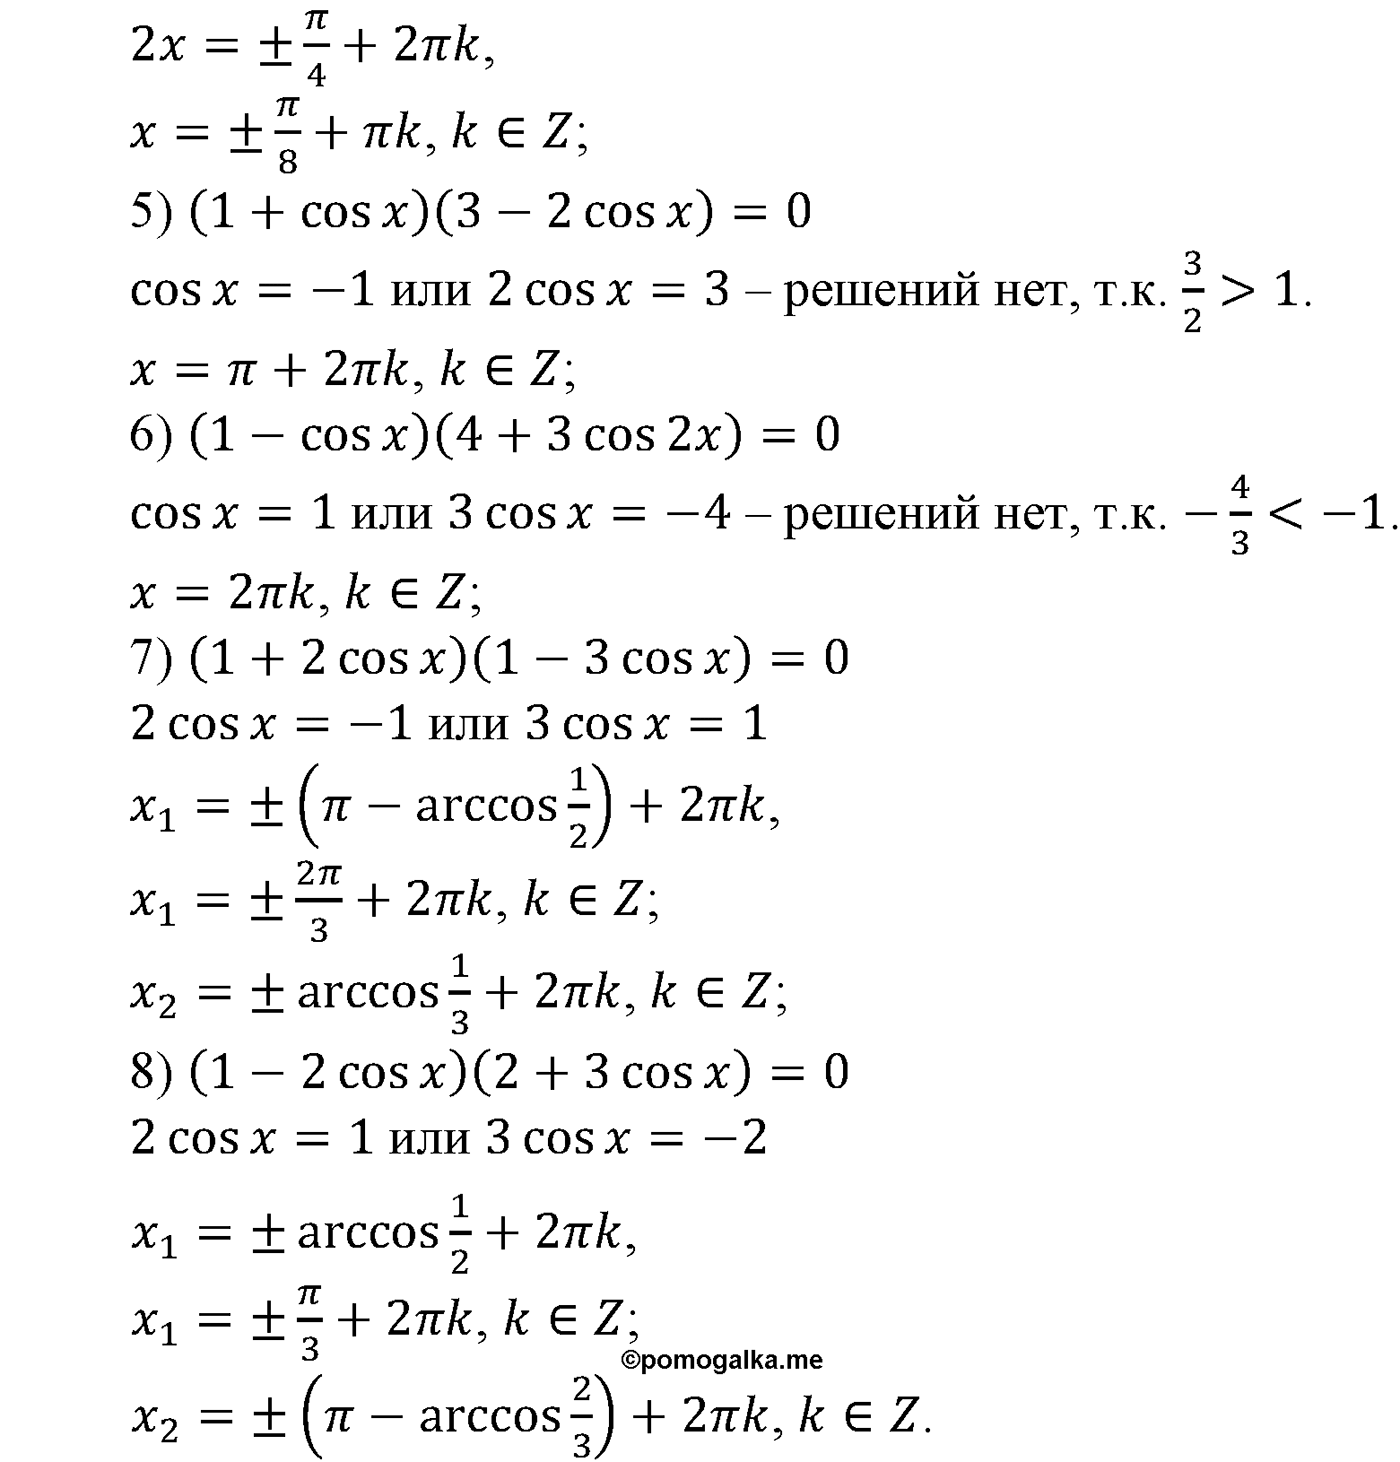 разбор задачи №576 по алгебре за 10-11 класс из учебника Алимова, Колягина